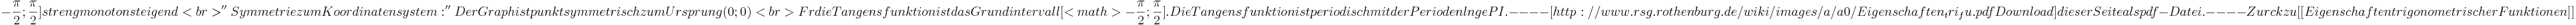 -\frac{\pi}{2}; \frac{\pi}{2}] streng monoton steigend<br>
''Symmetrie zum Koordinatensystem:'' Der Graph ist punktsymmetrisch zum Ursprung (0;0)<br>

Für die Tangensfunktion ist das Grundintervall [<math>-\frac{\pi}{2}; \frac{\pi}{2}]. Die Tangensfunktion ist periodisch mit der Periodenlänge PI.

----
[http://www.rsg.rothenburg.de/wiki/images/a/a0/Eigenschaften_tri_fu.pdf Download] dieser Seite als pdf-Datei.

----

Zurück zu [[Eigenschaften trigonometrischer Funktionen]]